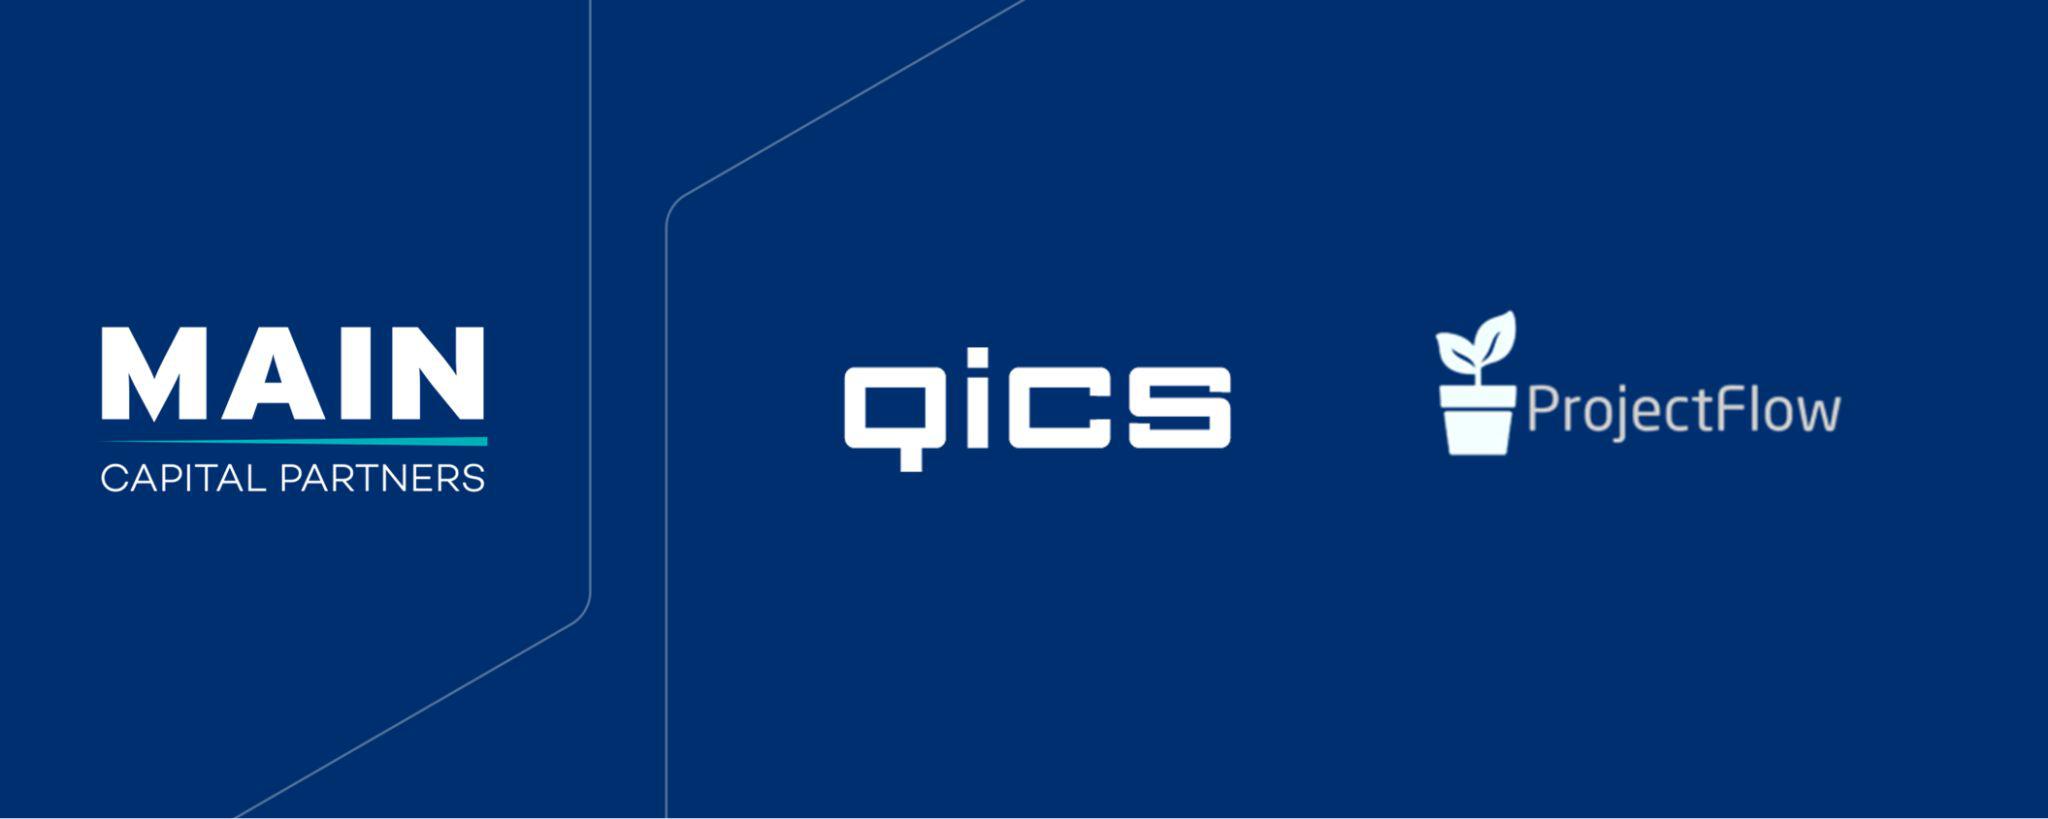 Qics breidt uit naar de Scandinavische markt met de overname van het Deense Projectflow